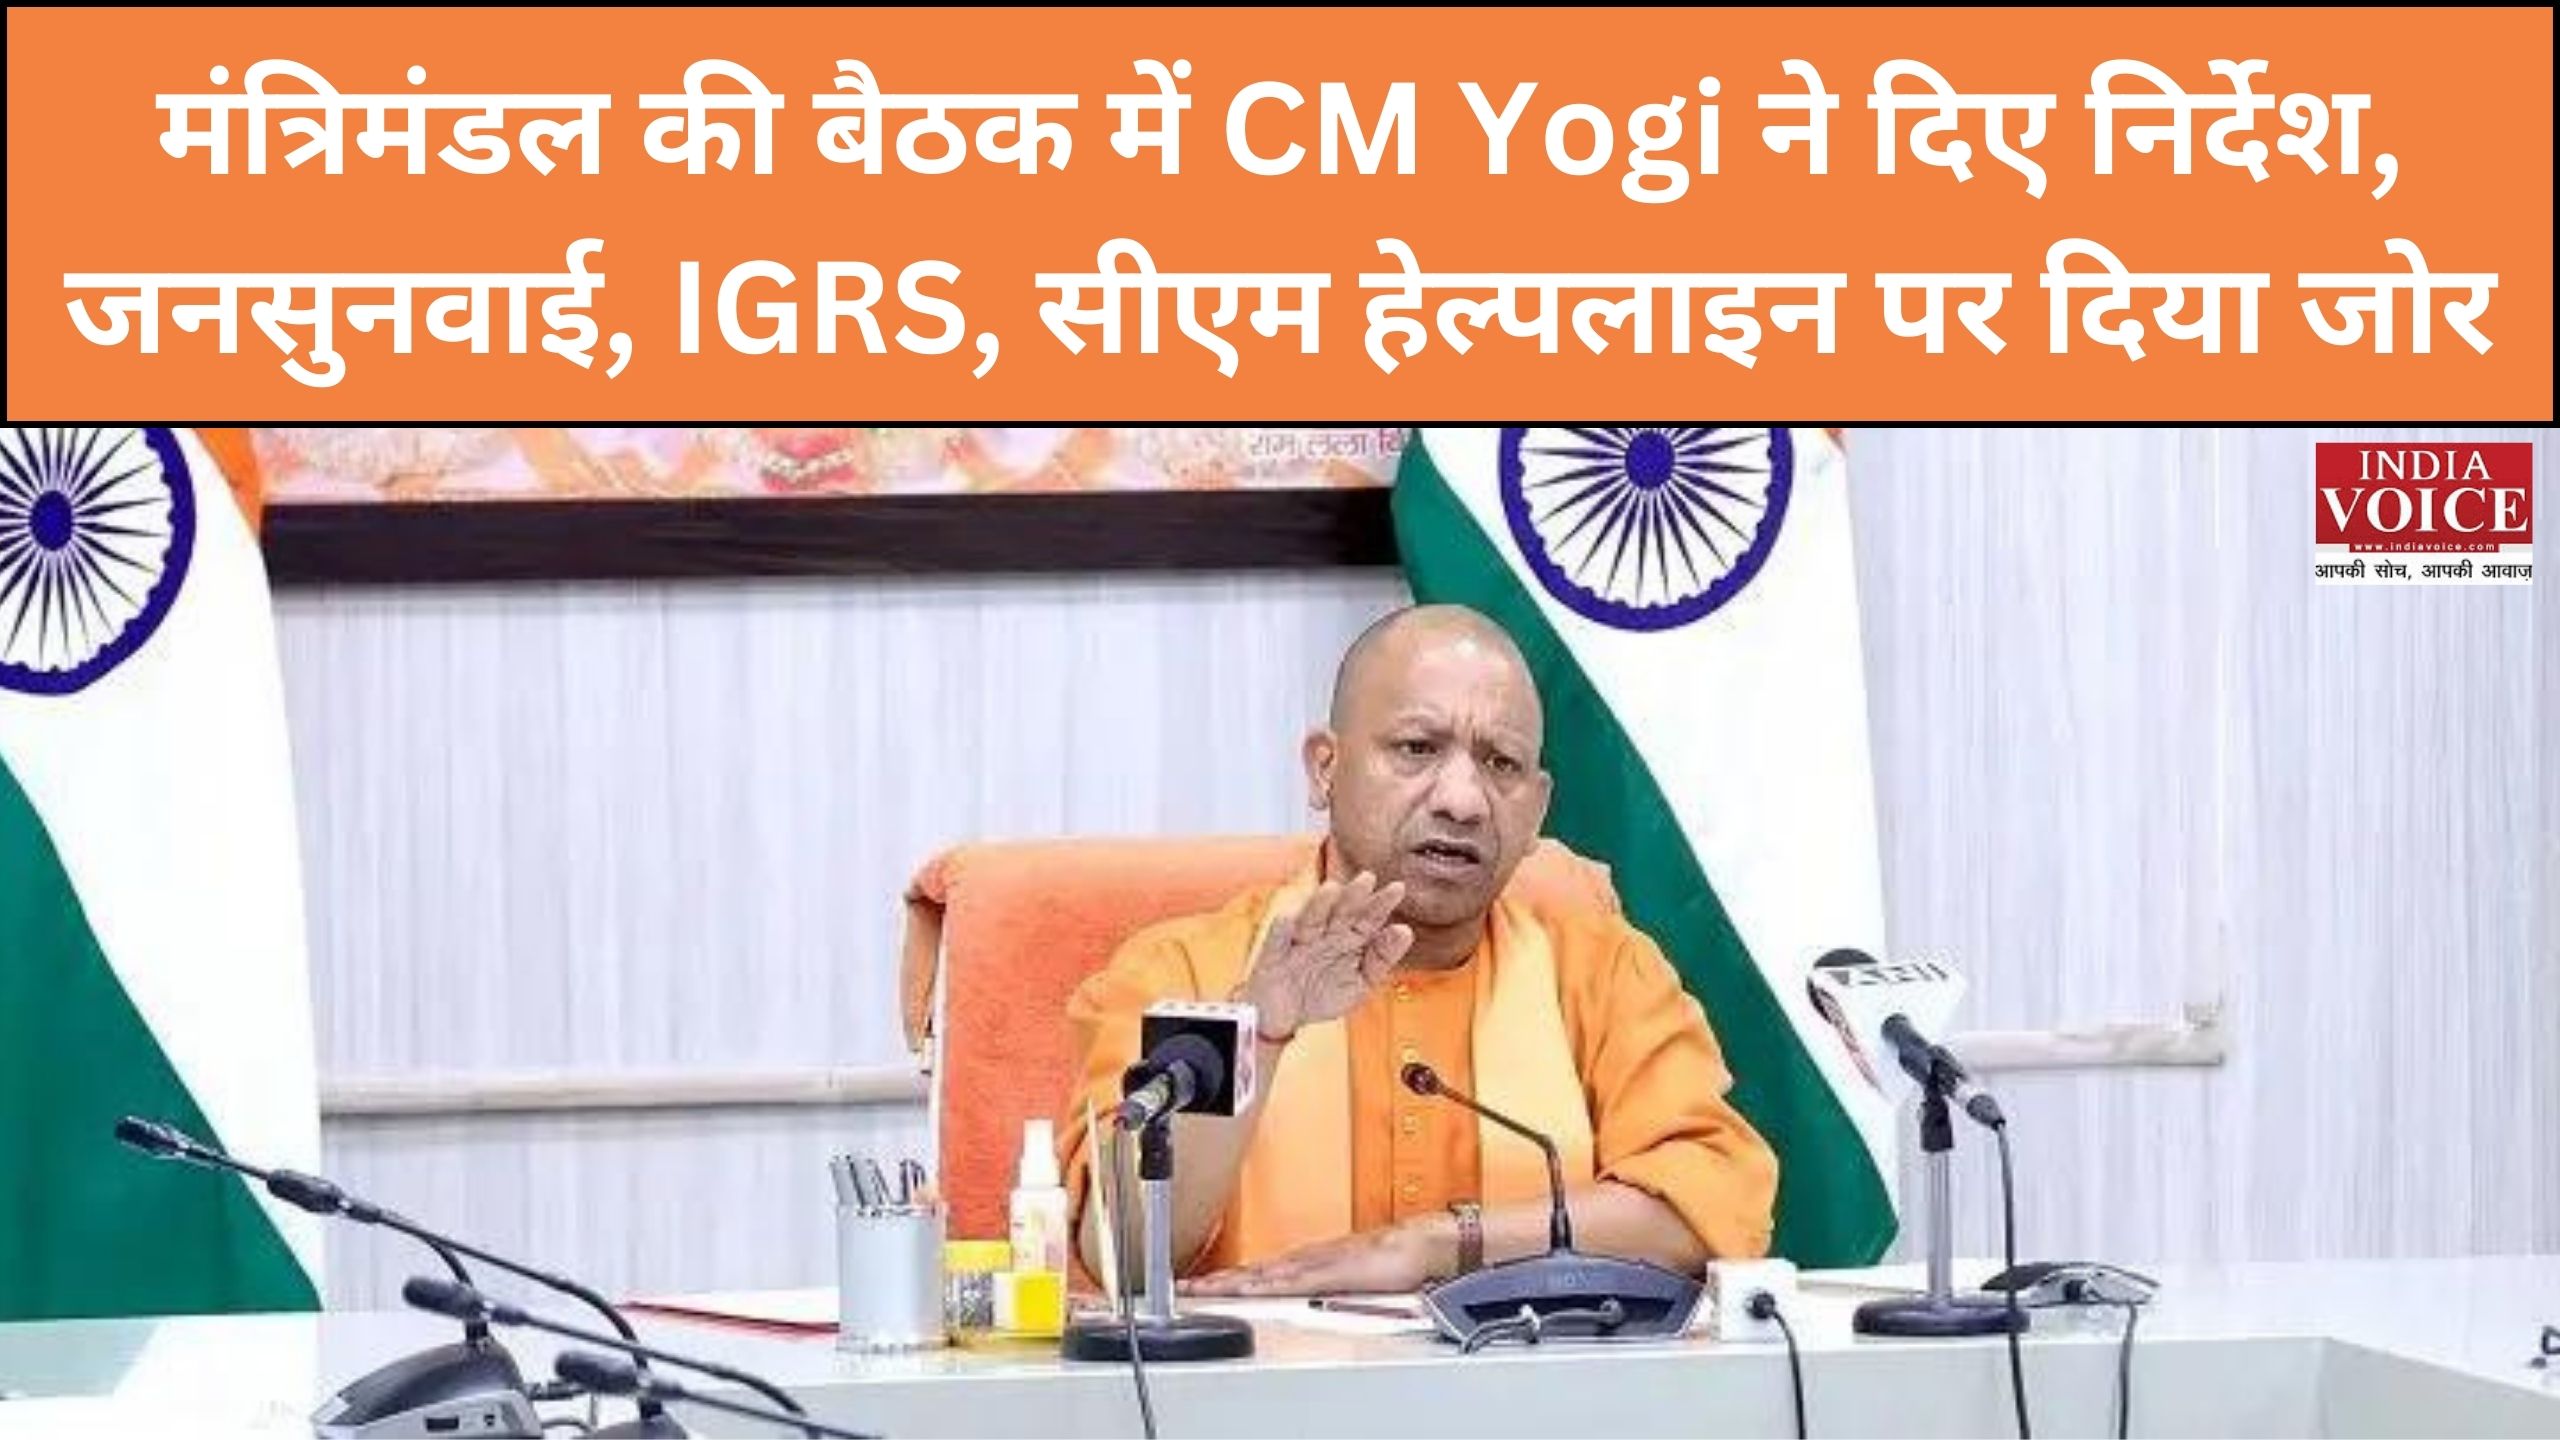 UP : मंत्रिमंडल की बैठक में CM Yogi ने दिए निर्देश, जनसुनवाई, IGRS, सीएम हेल्पलाइन पर दिया जोर